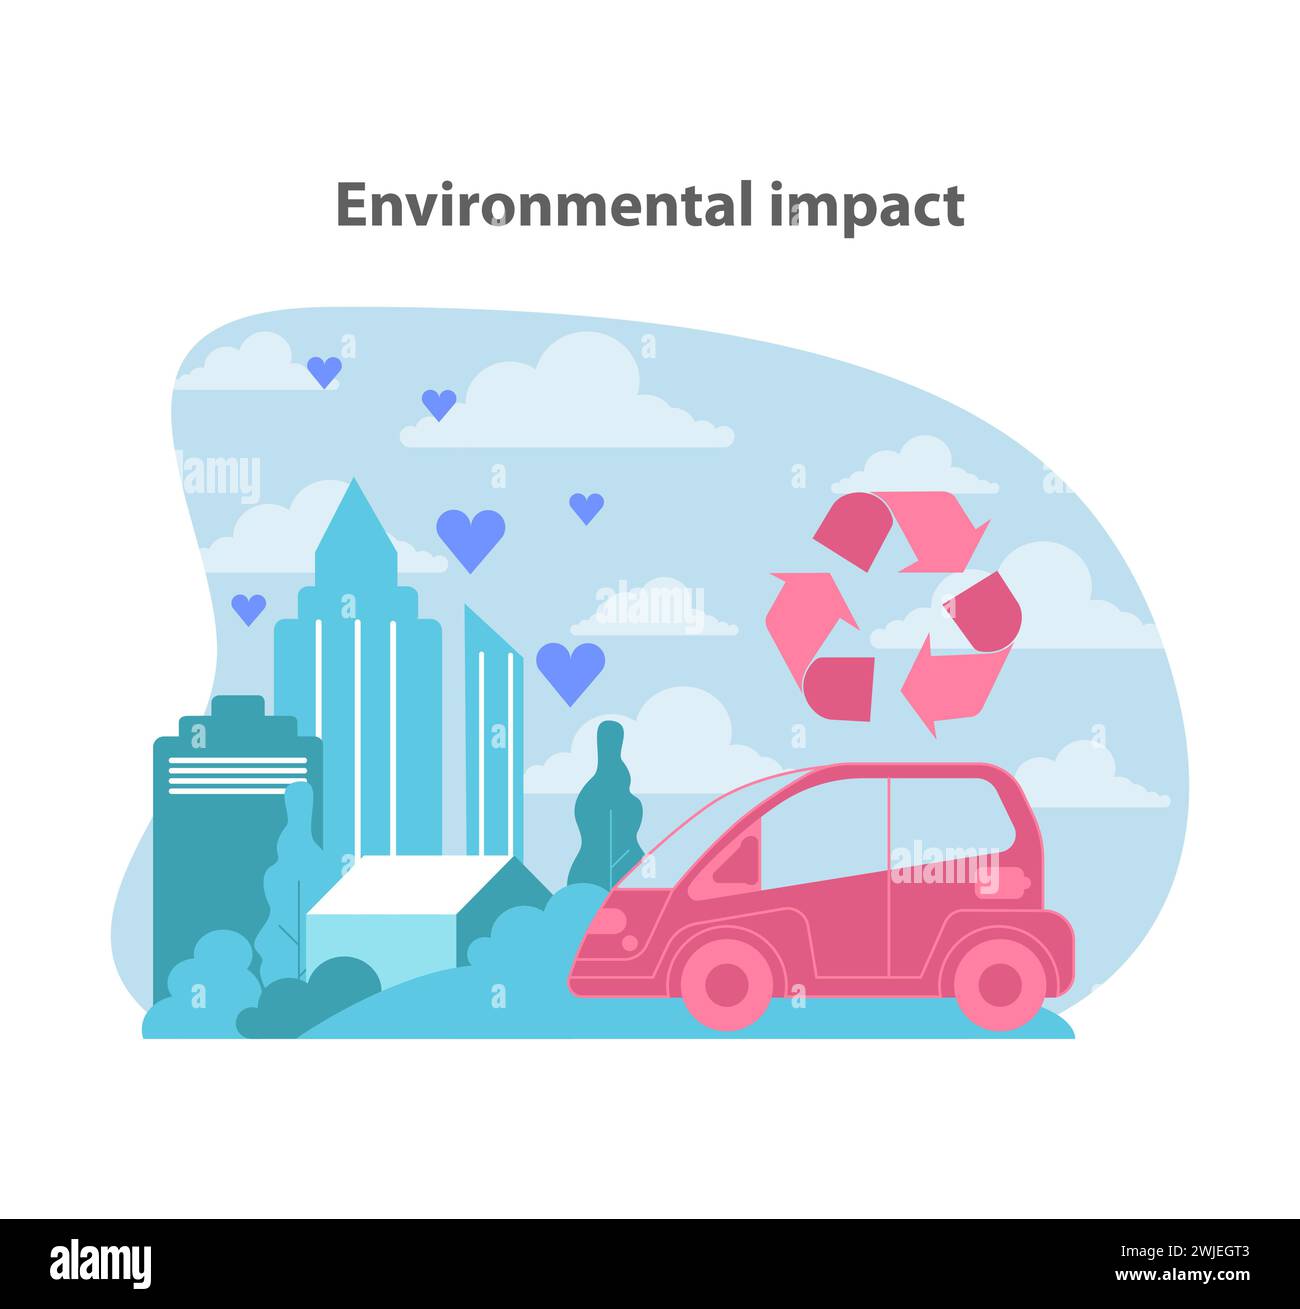 L'empreinte écologique des voitures électriques. Illustrer l'impact positif sur l'environnement grâce au recyclage urbain et à la réduction des émissions. Illustration vectorielle plate. Illustration de Vecteur